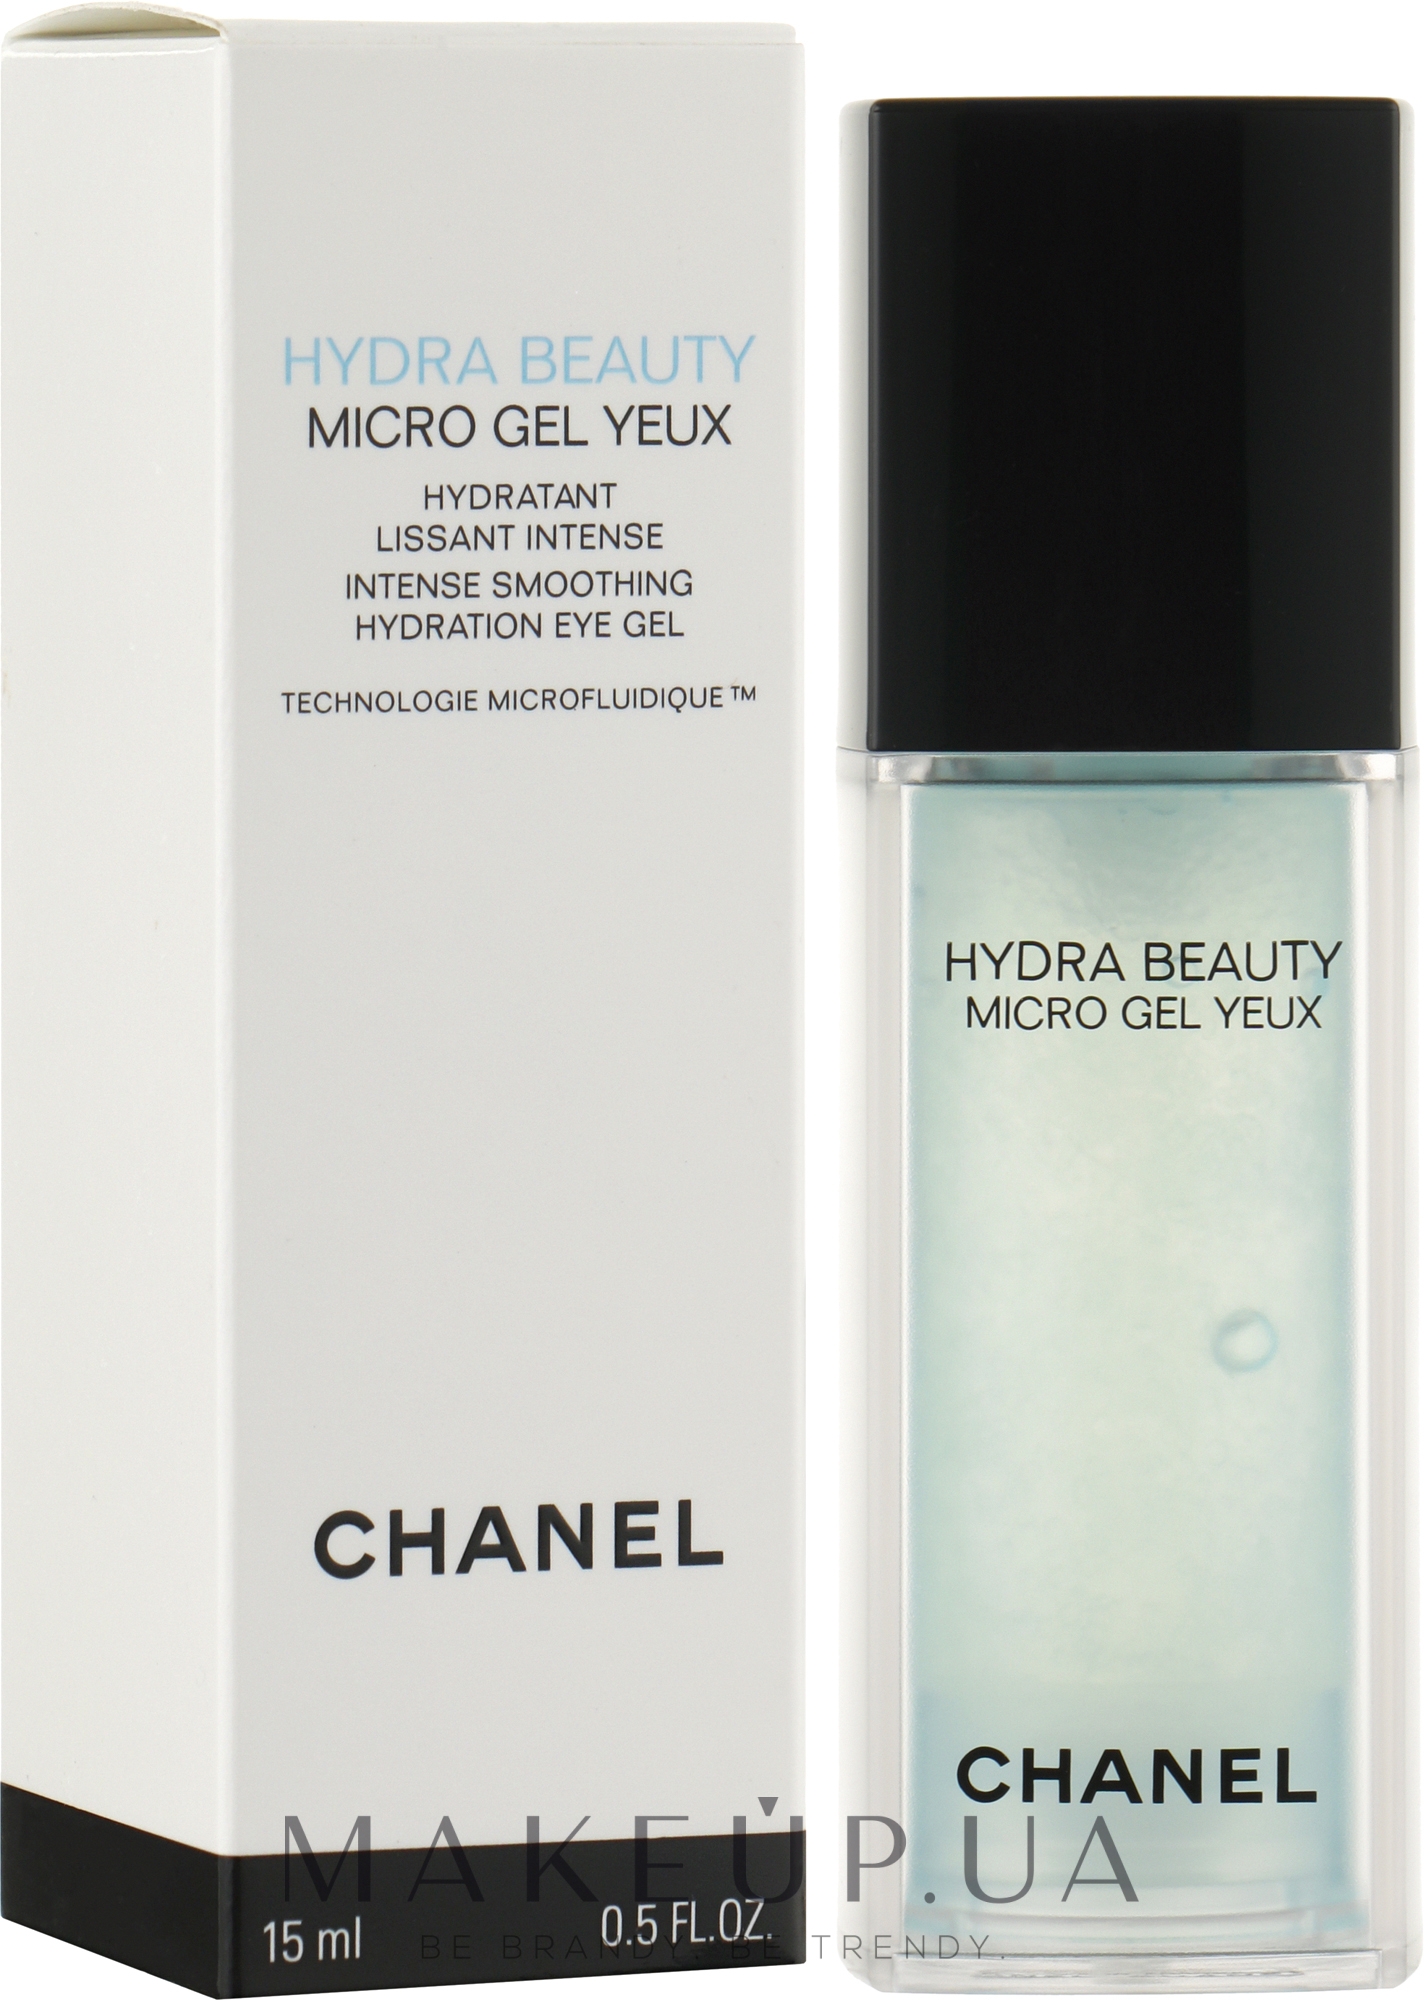 Chanel hydra beauty micro gel yeux описание конопля приморская фото